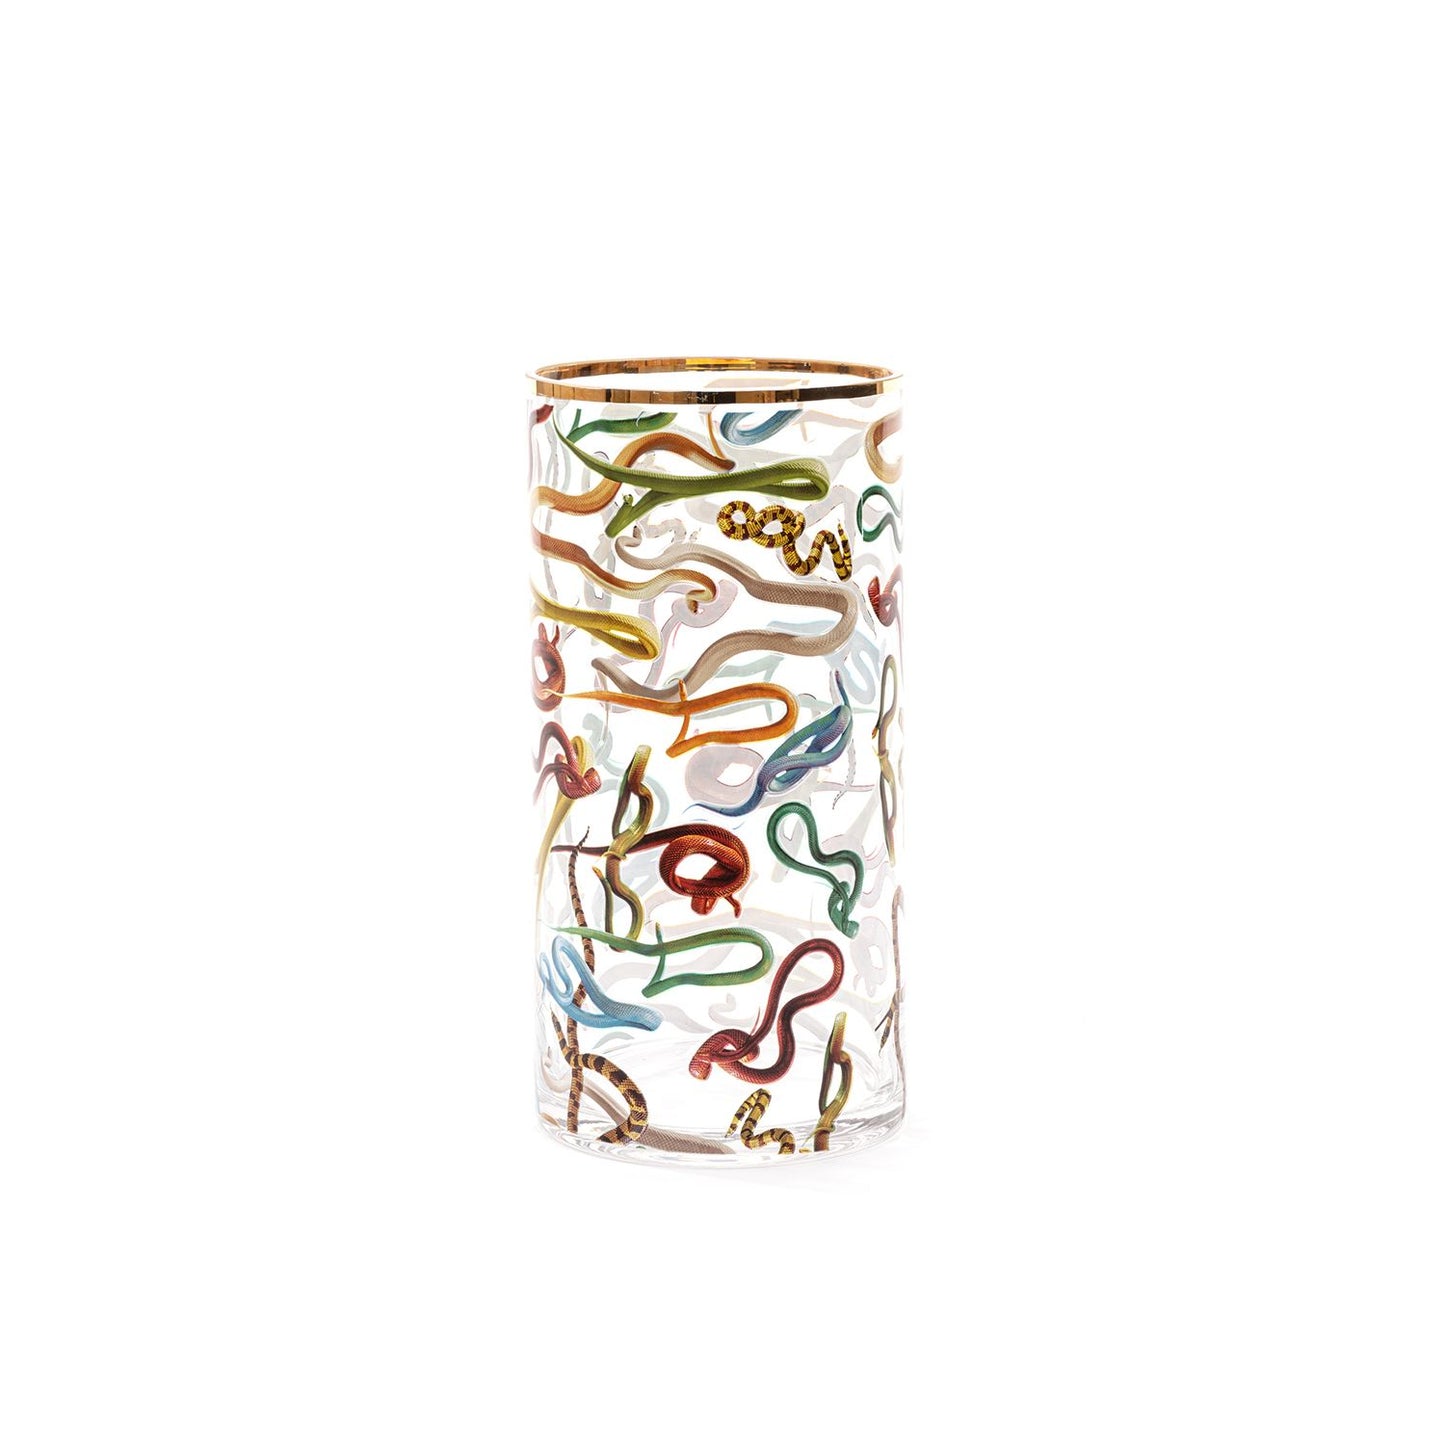 Snakes Glass Vase - 15x30cm